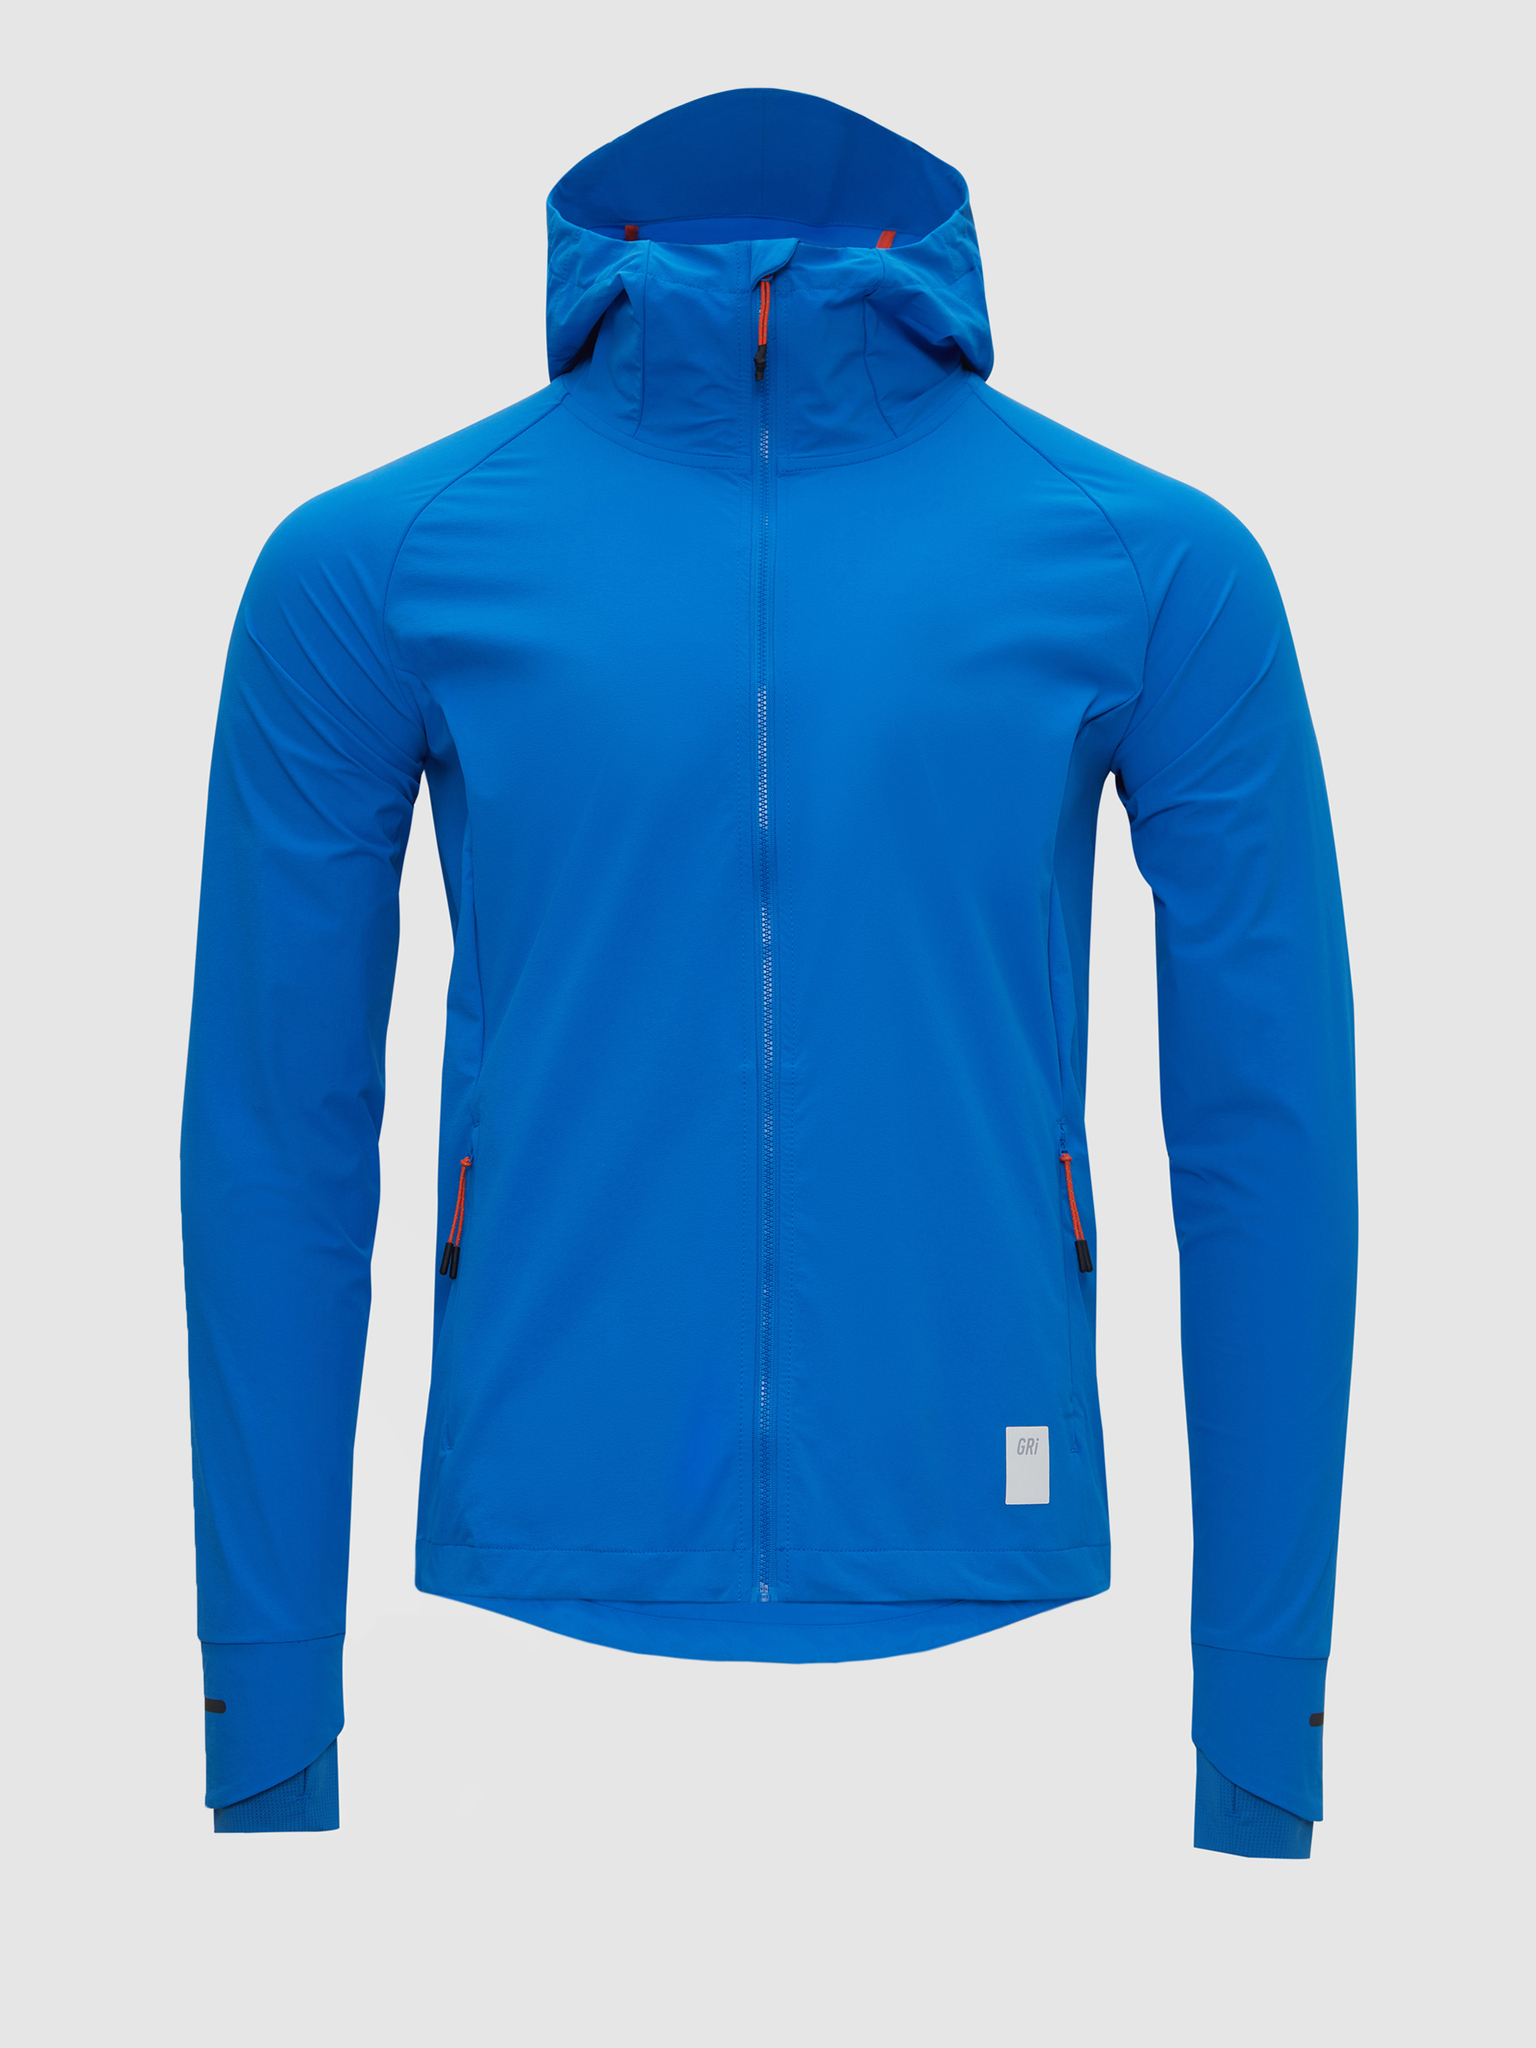 Куртка мужская GRI Джеди 4.0 синяя